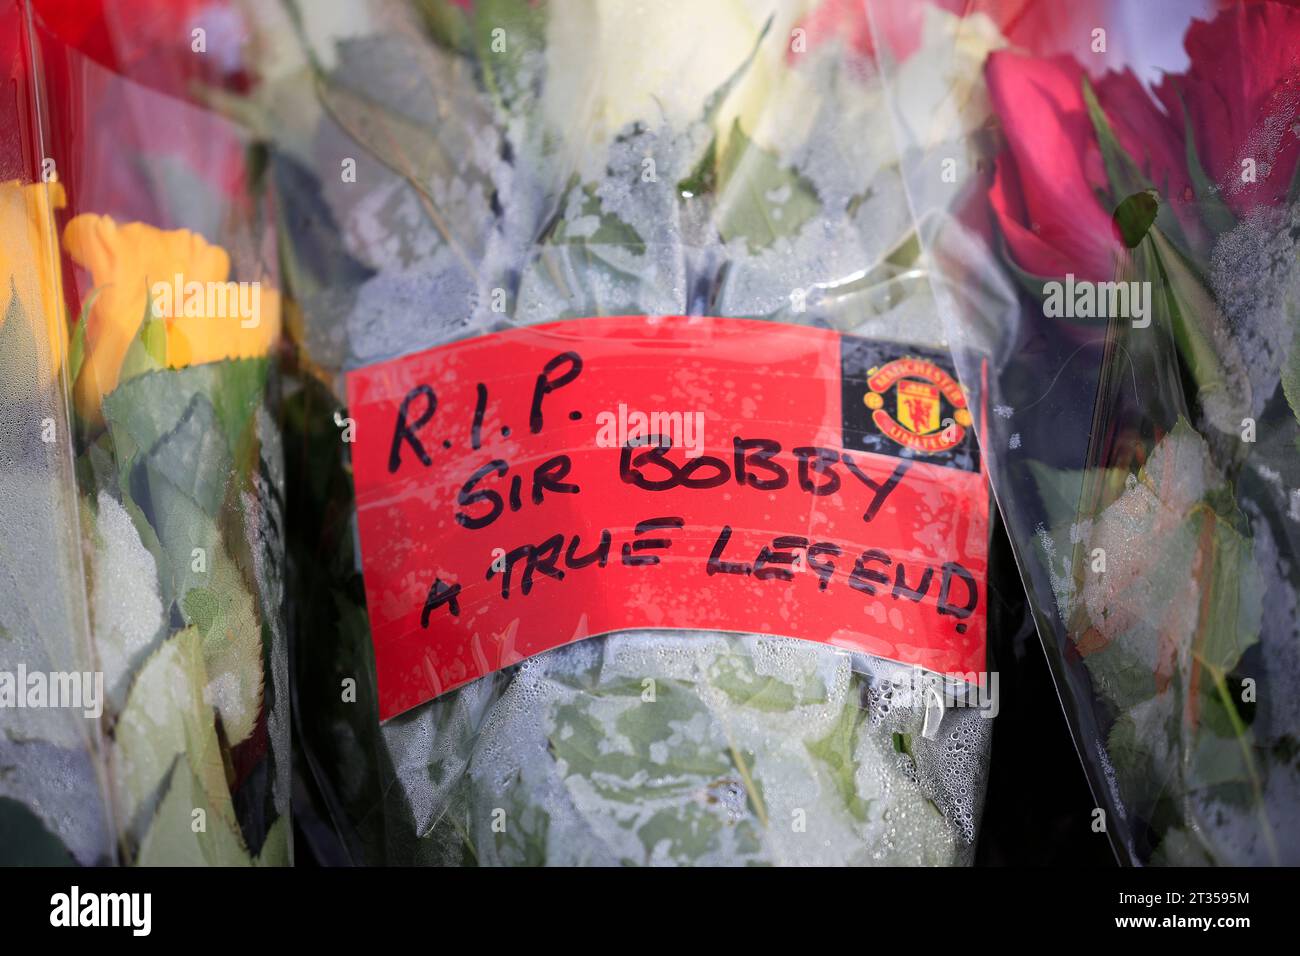 Omaggio scritto al defunto Sir Bobby Charlton fuori Old Trafford, Manchester, Regno Unito, 23 ottobre 2023 (foto di Conor Molloy/News Images) Foto Stock